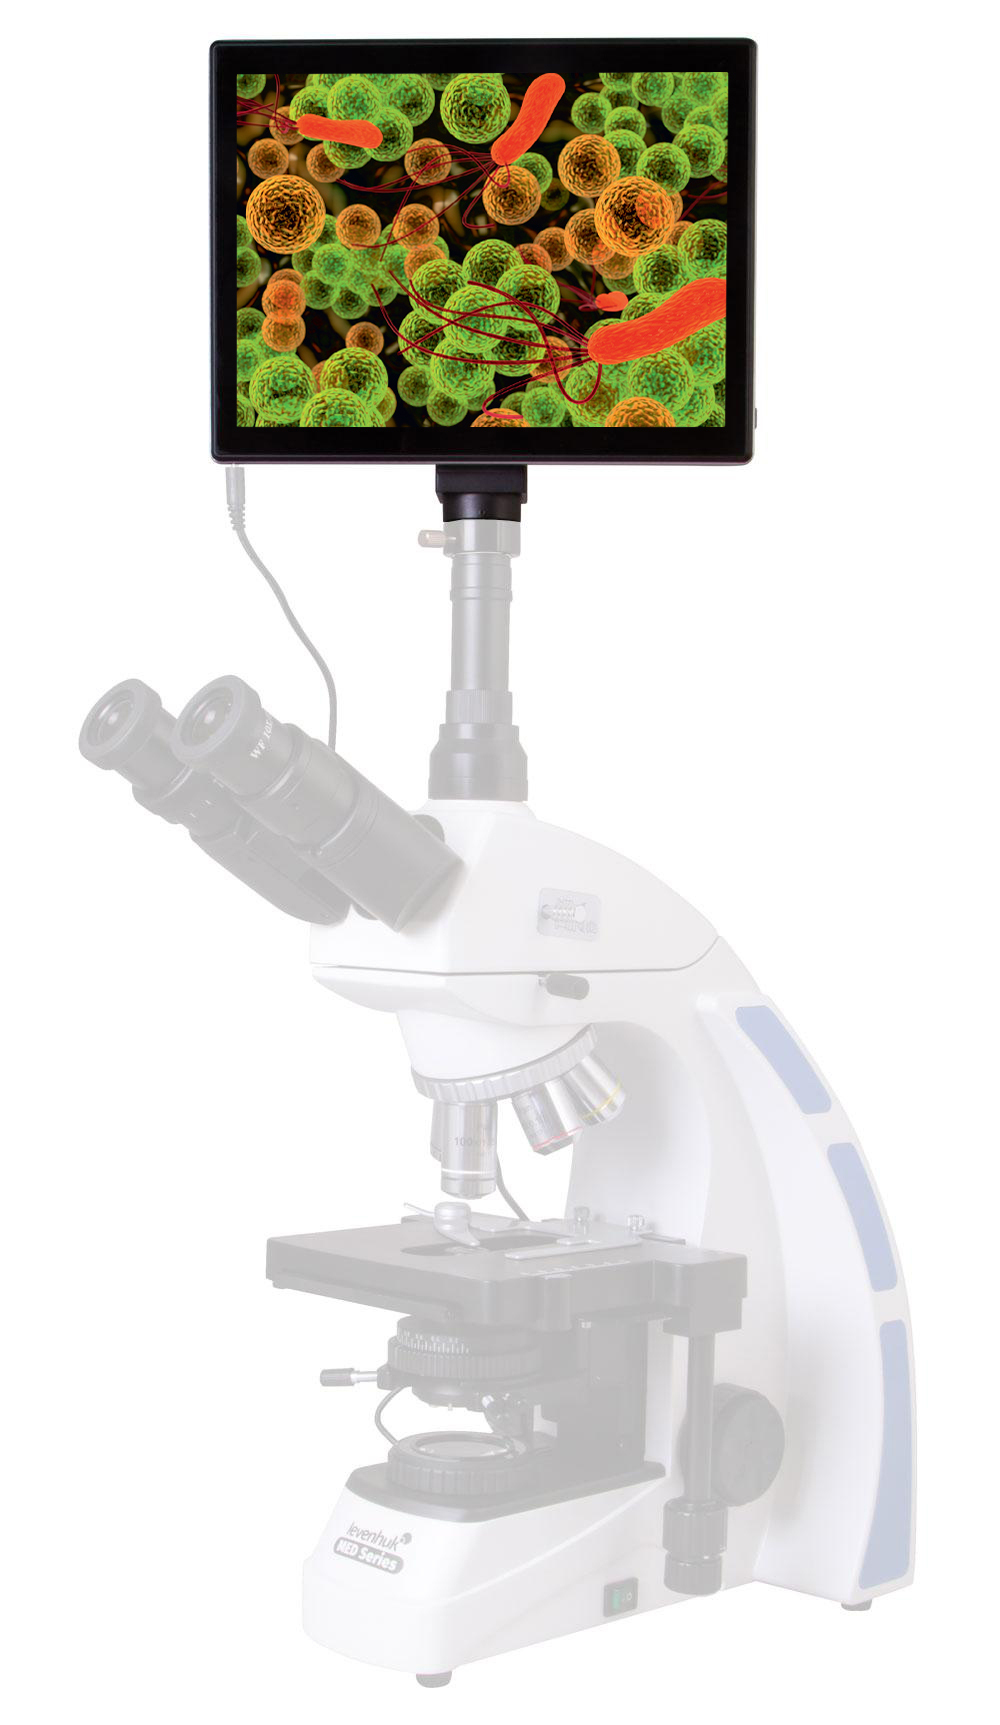 Камера цифровая Levenhuk MED 5 Мпикс с ЖК-экраном 9,4" для микроскопов